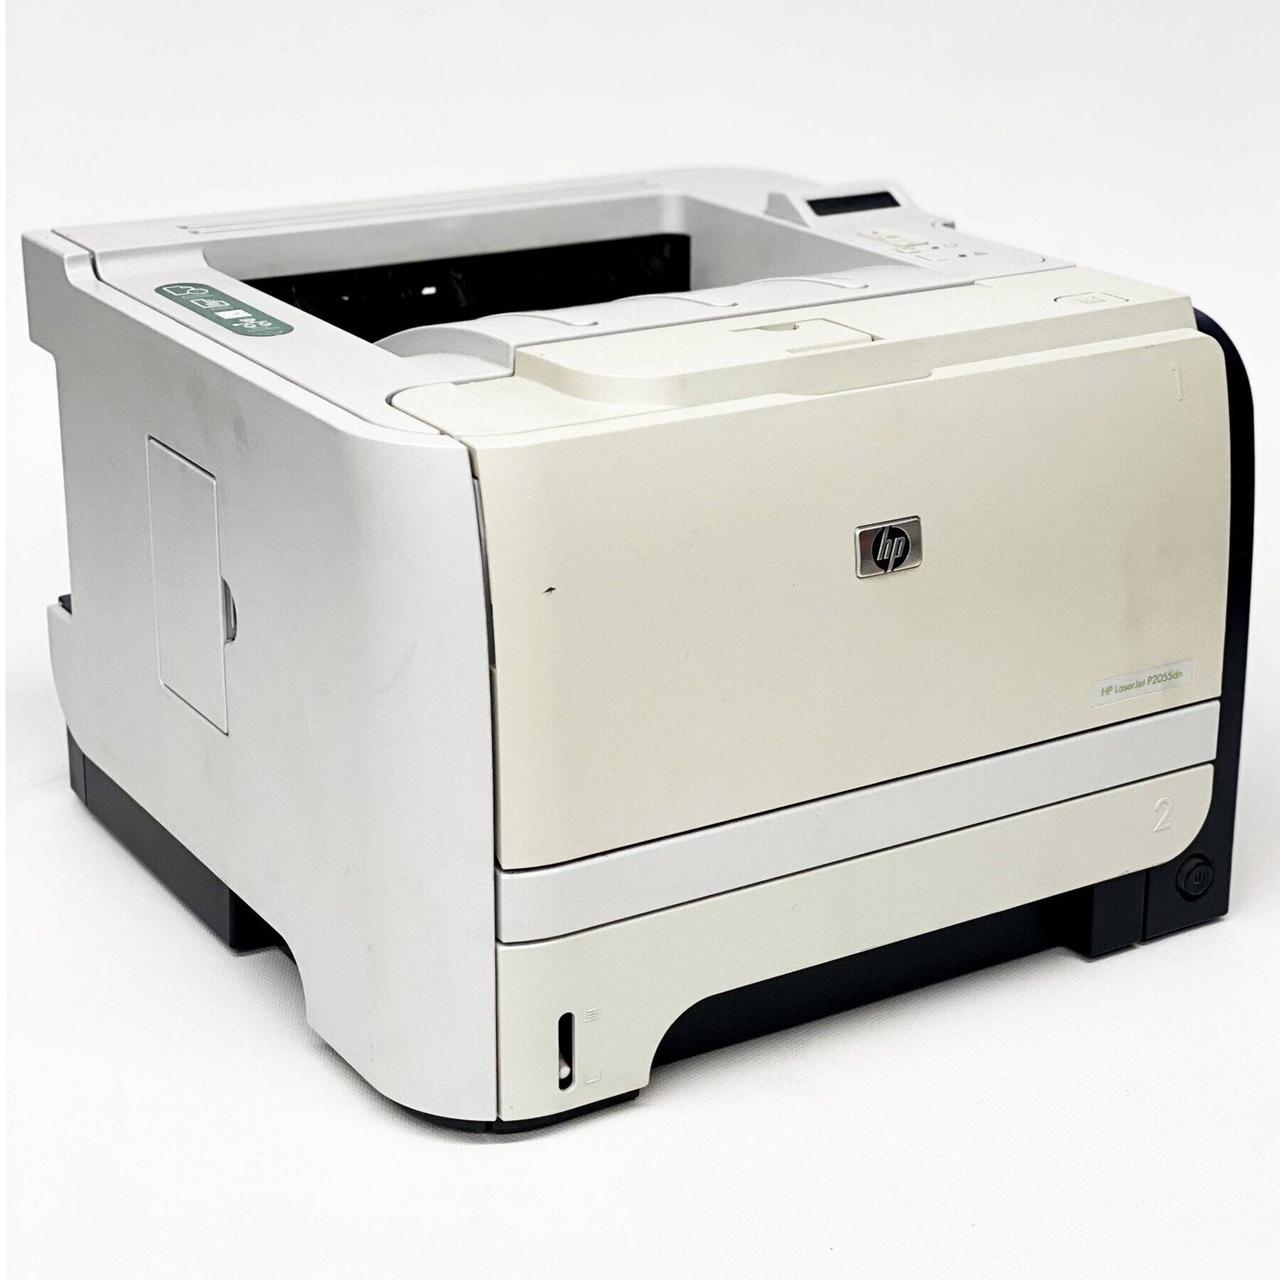 Принтер HP LaserJet P2055dn / Лазерная монохромная печать / 1200x1200 dpi / A4 / 33 стр./мин / USB 2.0, Ethernet / Дуплекс /